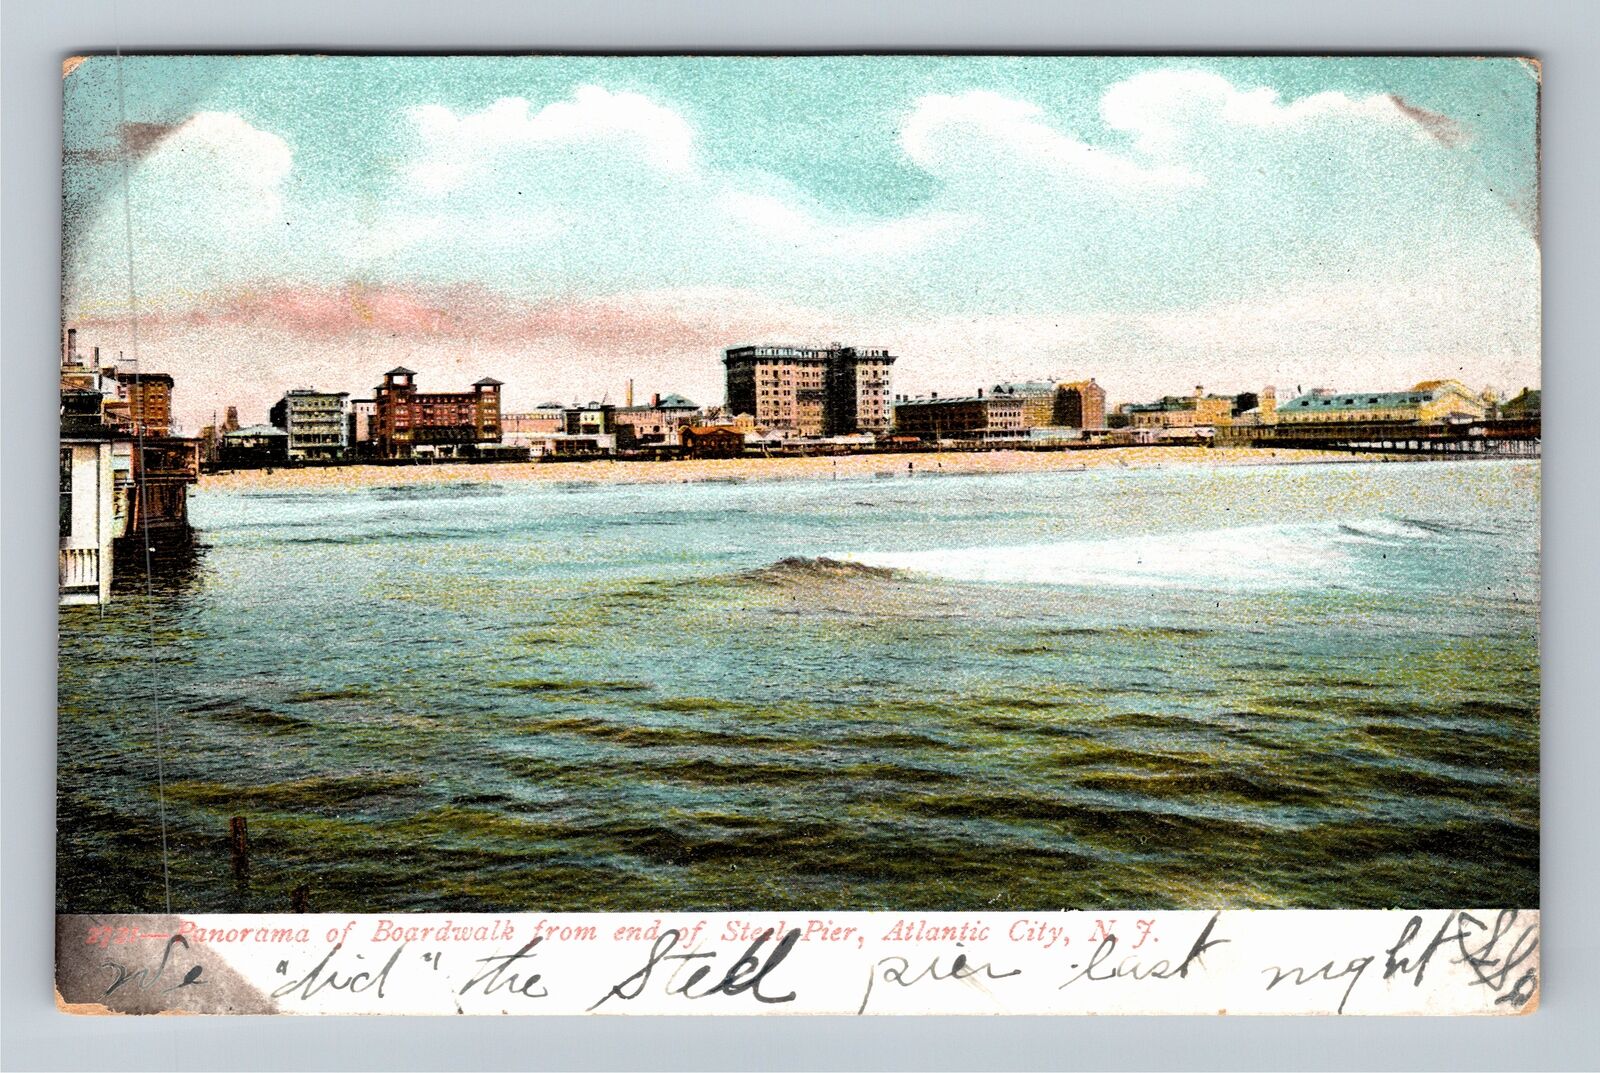 Atlantic City NJ-New Jersey, Boardwalk Steel Pier c1907 Vintage Postcard